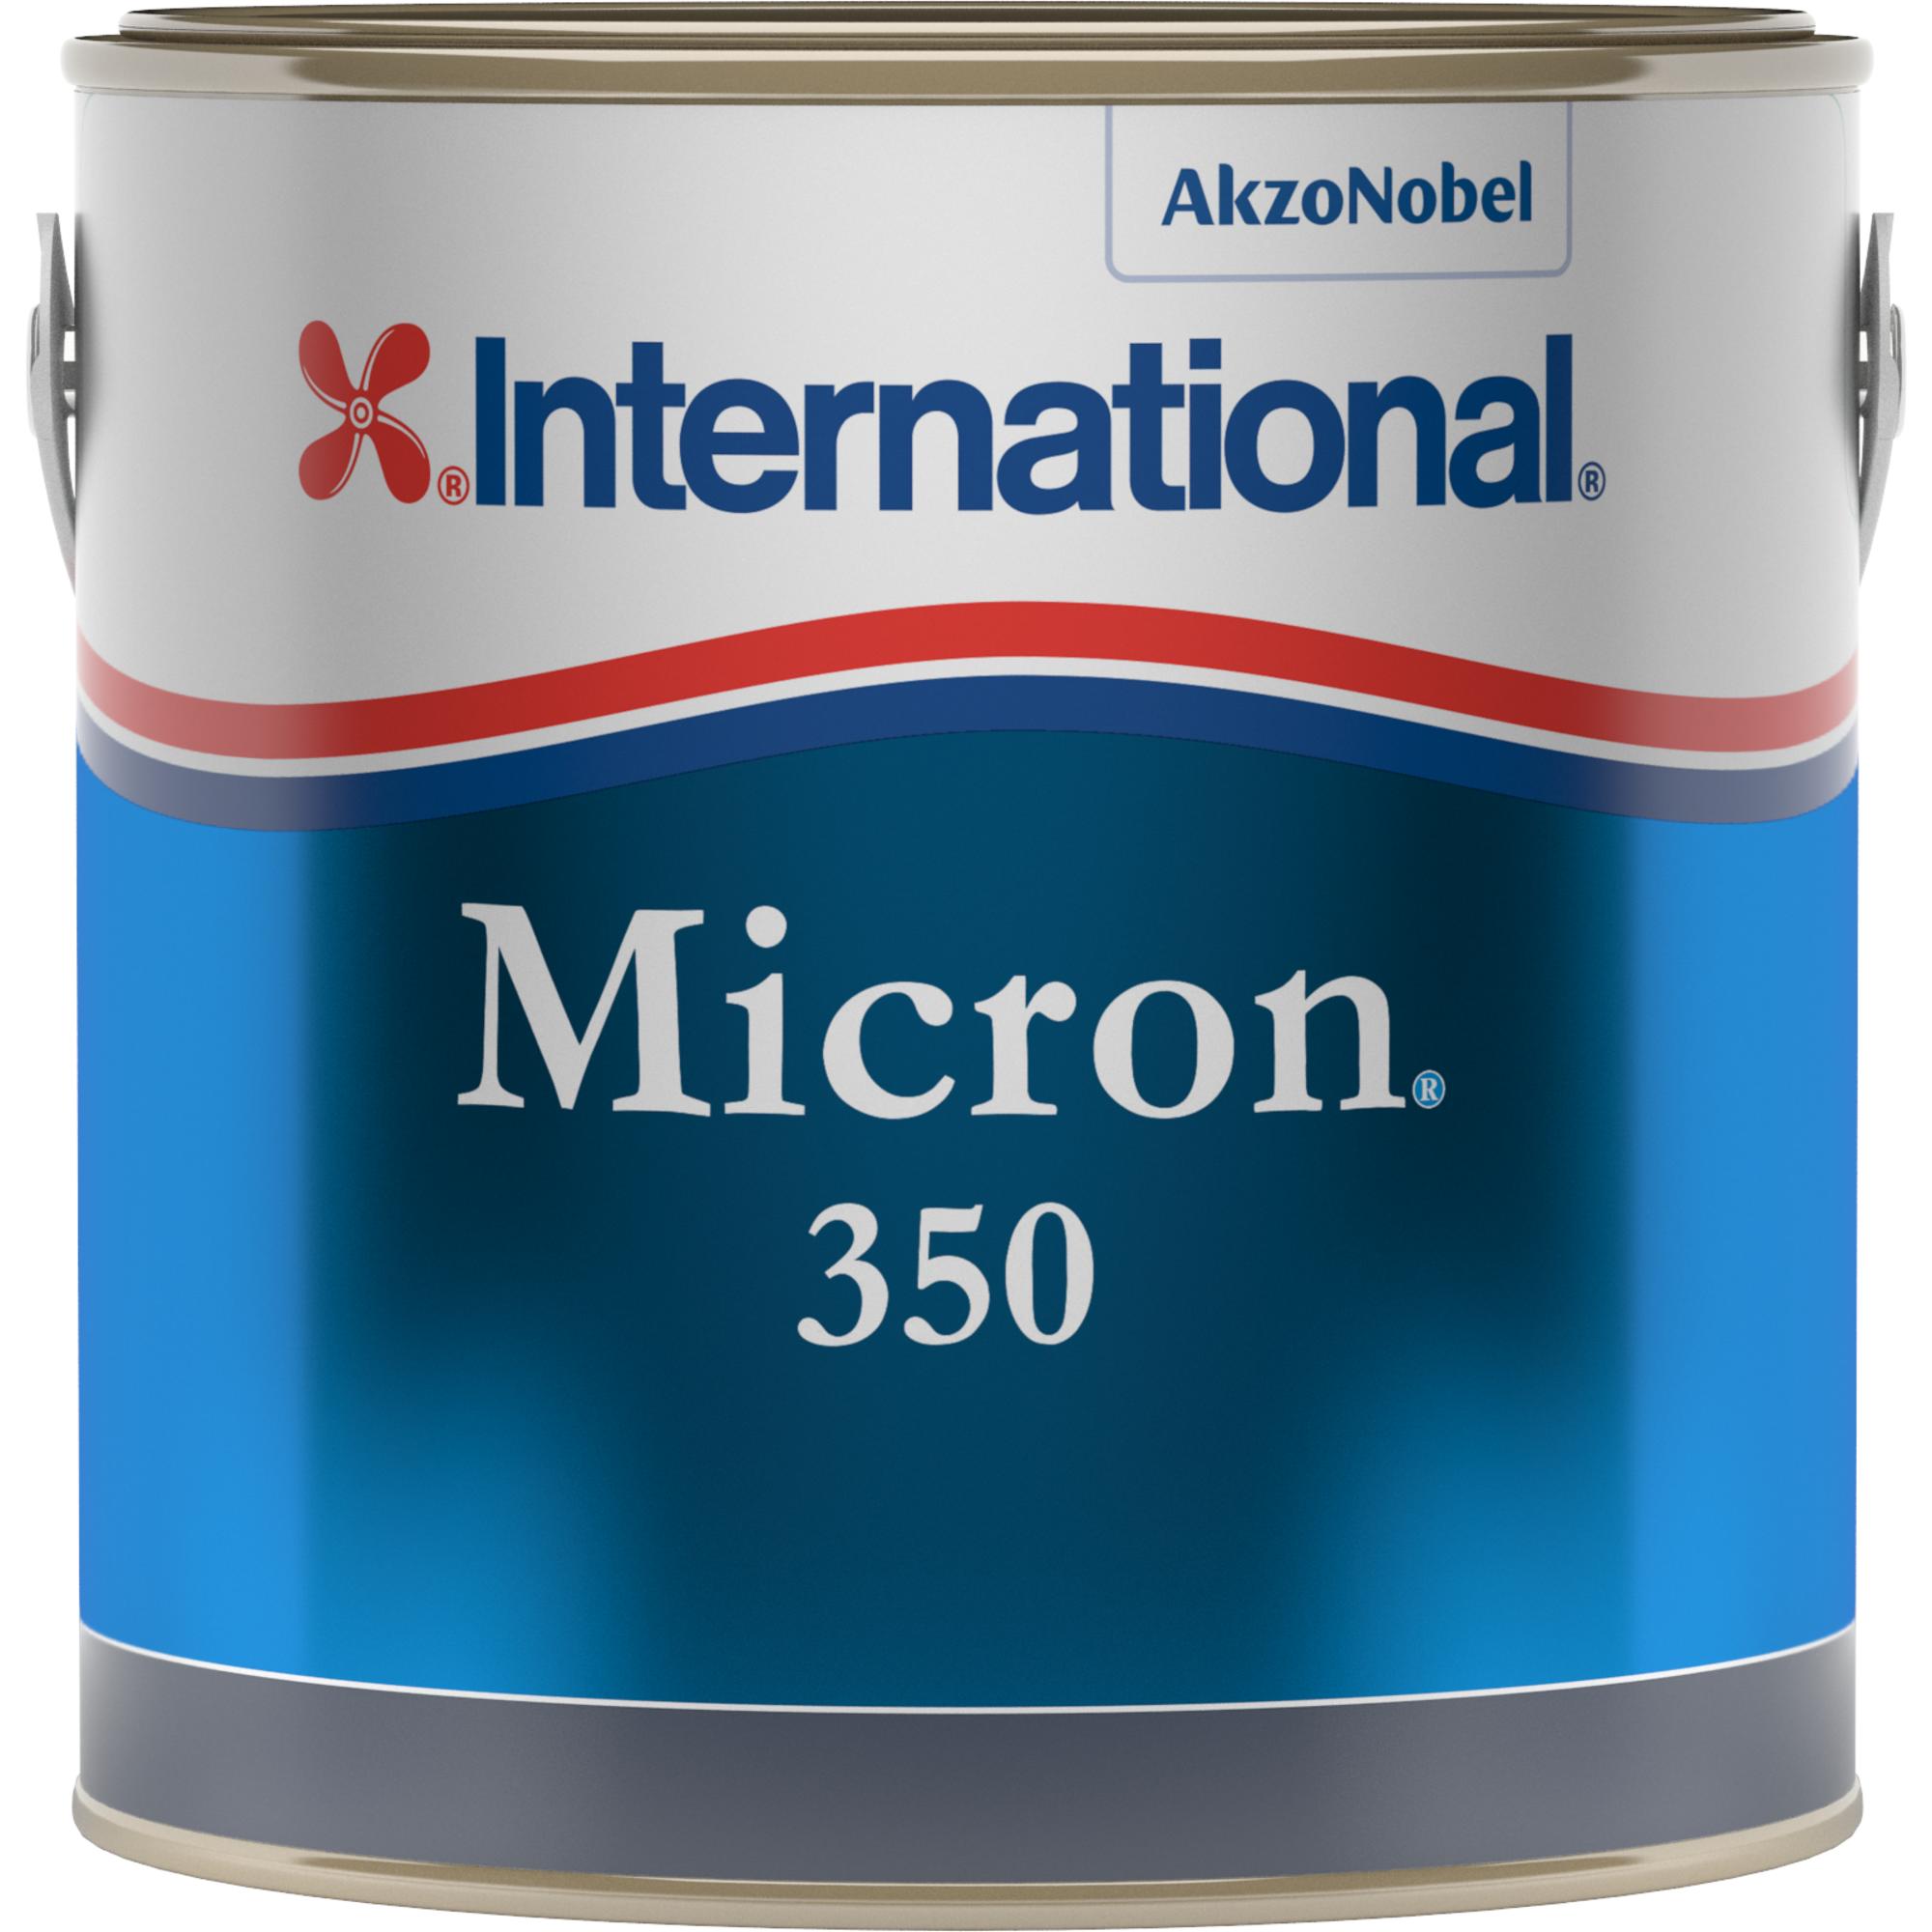 Micron 350 | Micron_350_2.5LT_Clipped.jpg | 1700897677